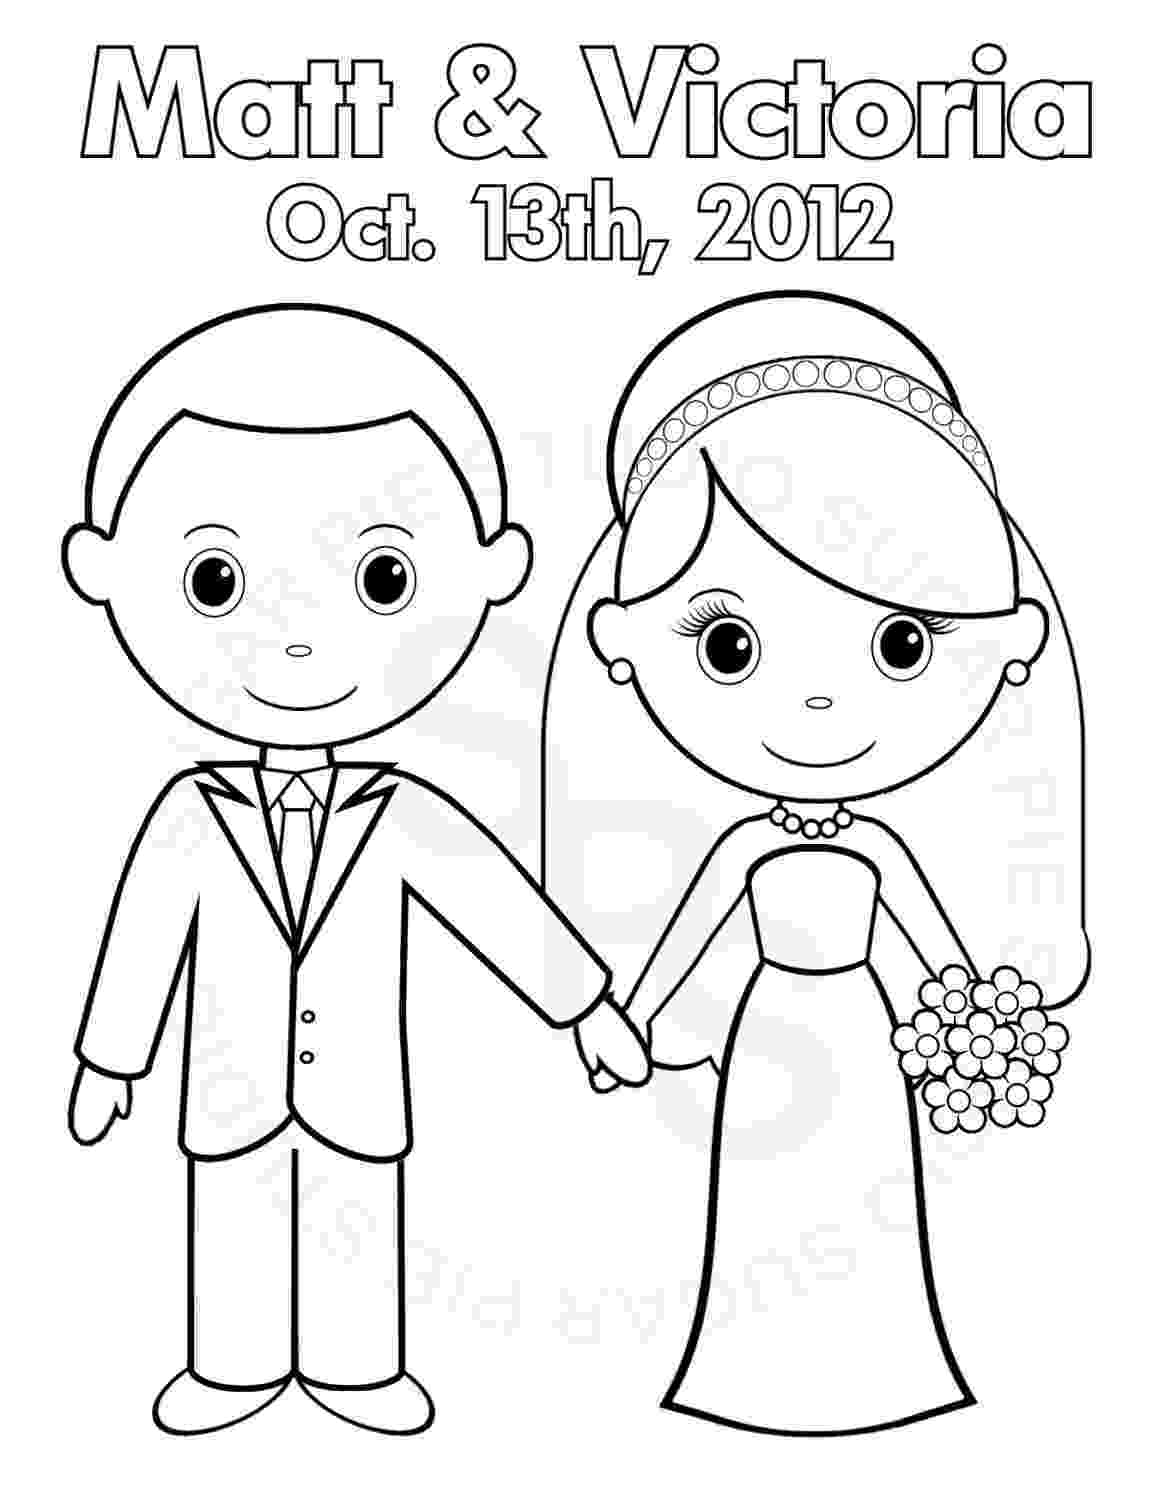 bride coloring page personalized printable bride groom wedding by sugarpiestudio coloring page bride 